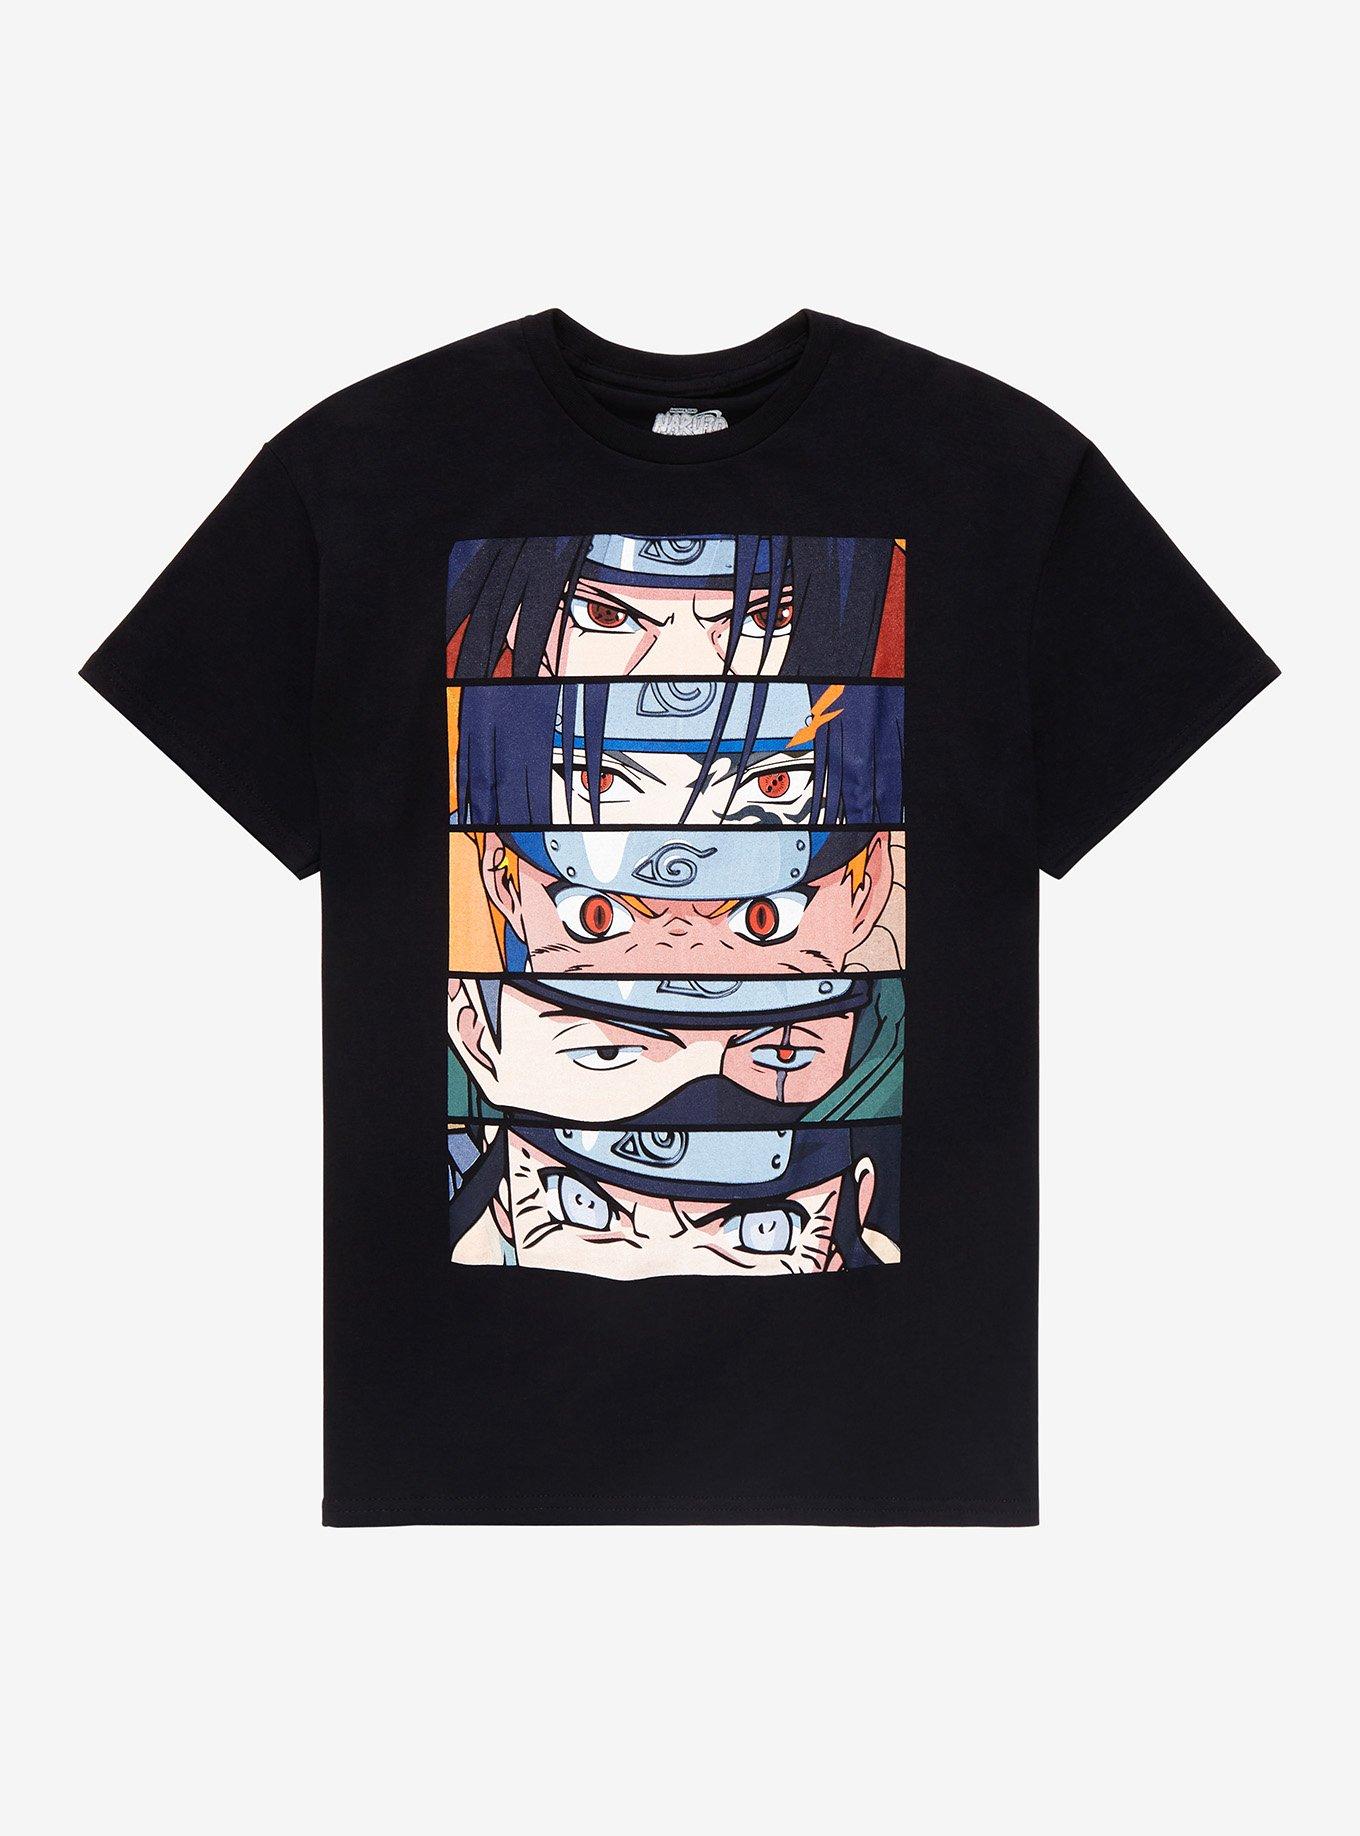 Naruto Itachi Grey T-Shirt